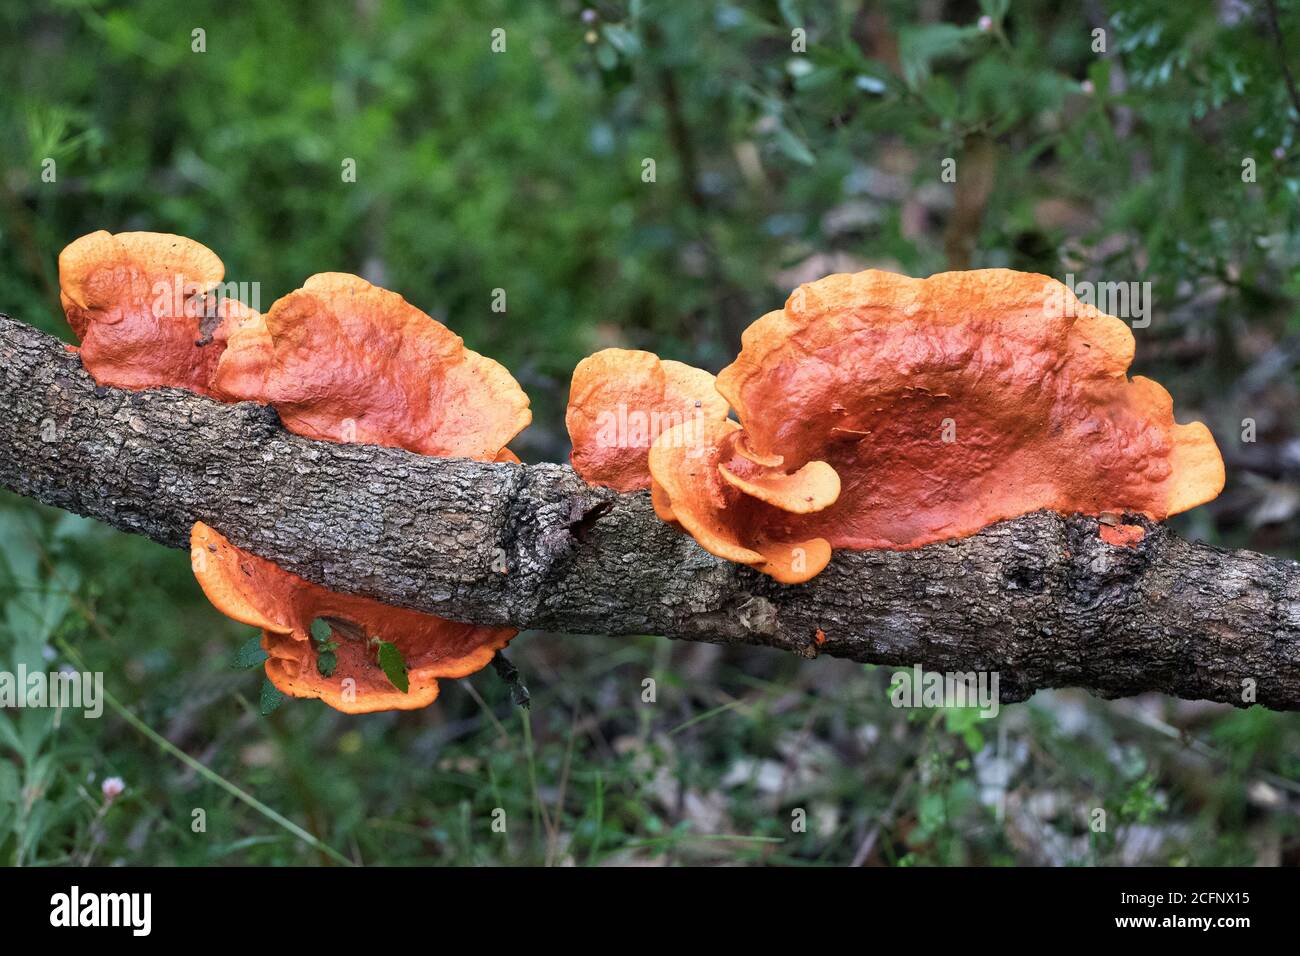 Scarlet Bracket Fungi growing on rotting log Stock Photo